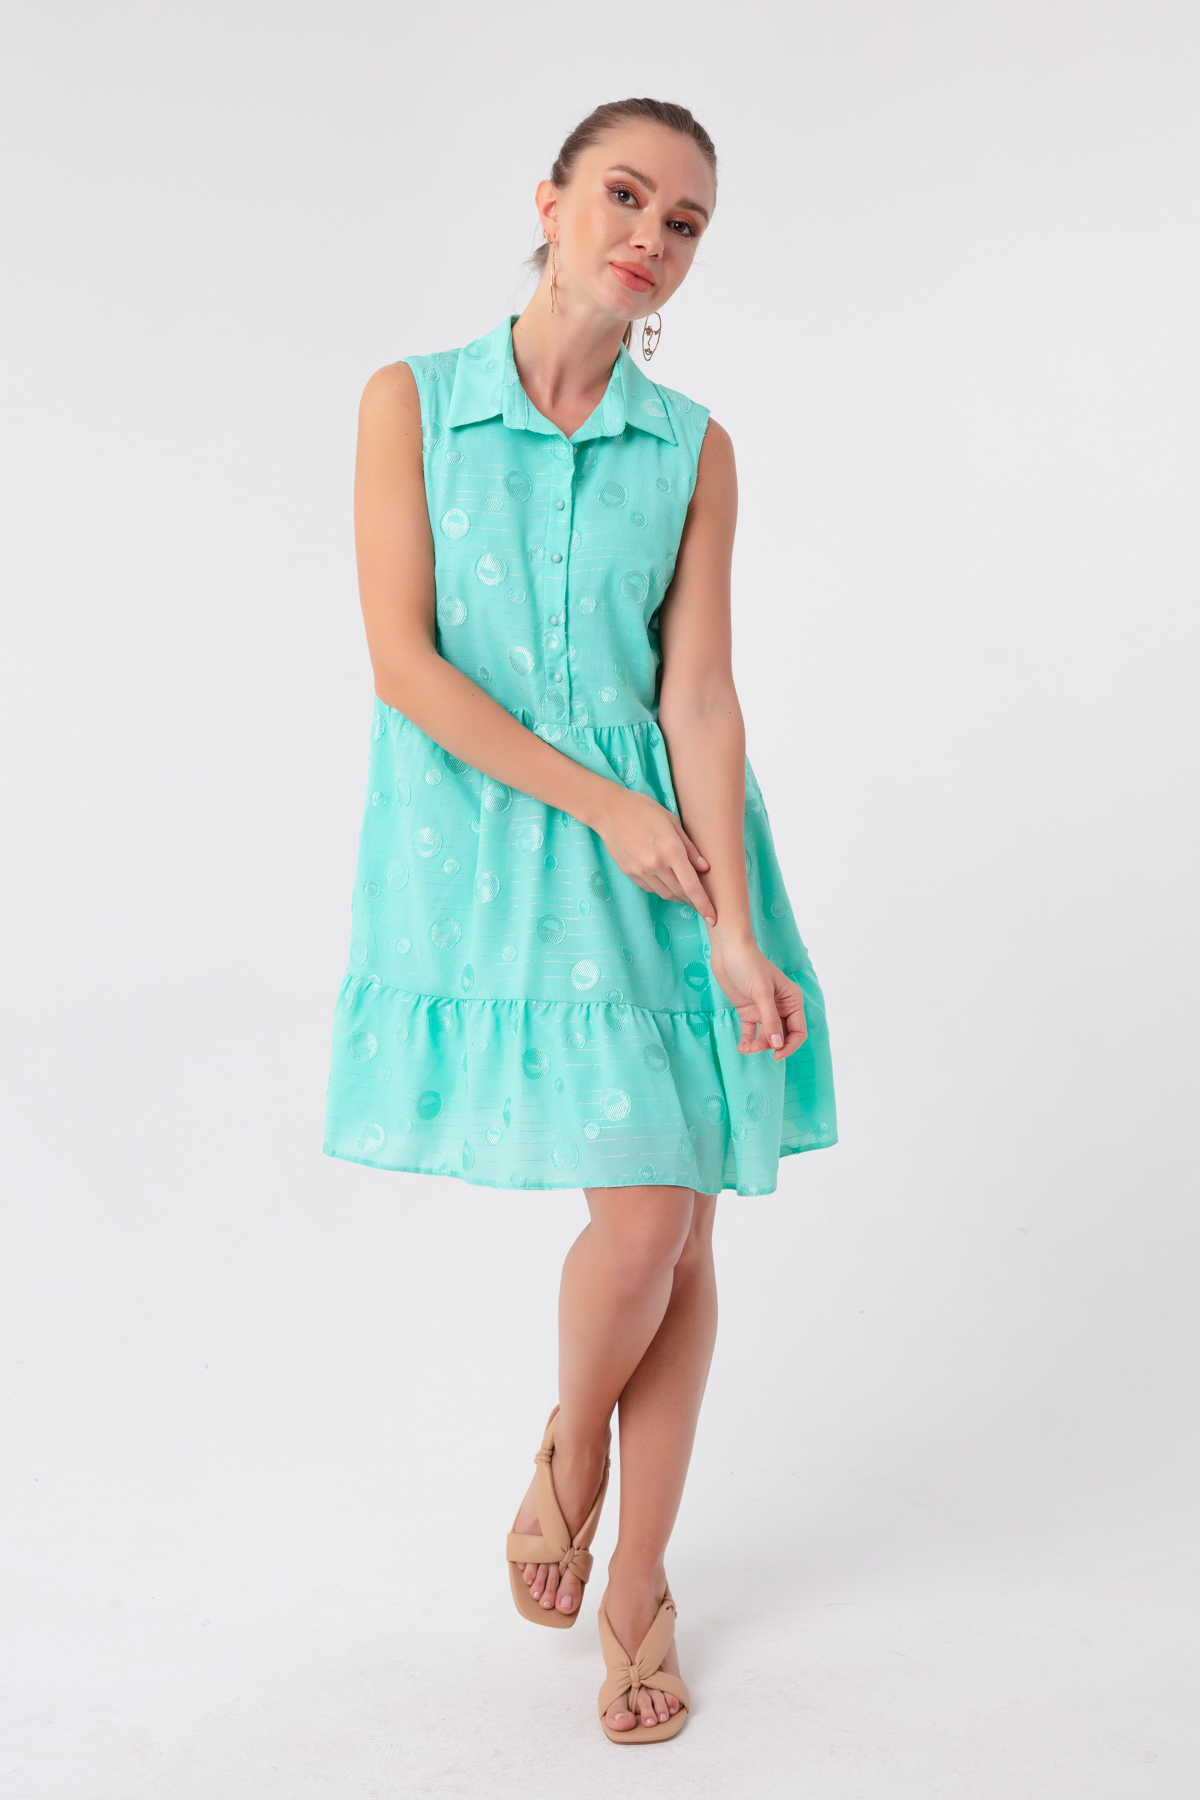 Women's Mint Green Frilly Mini Dress